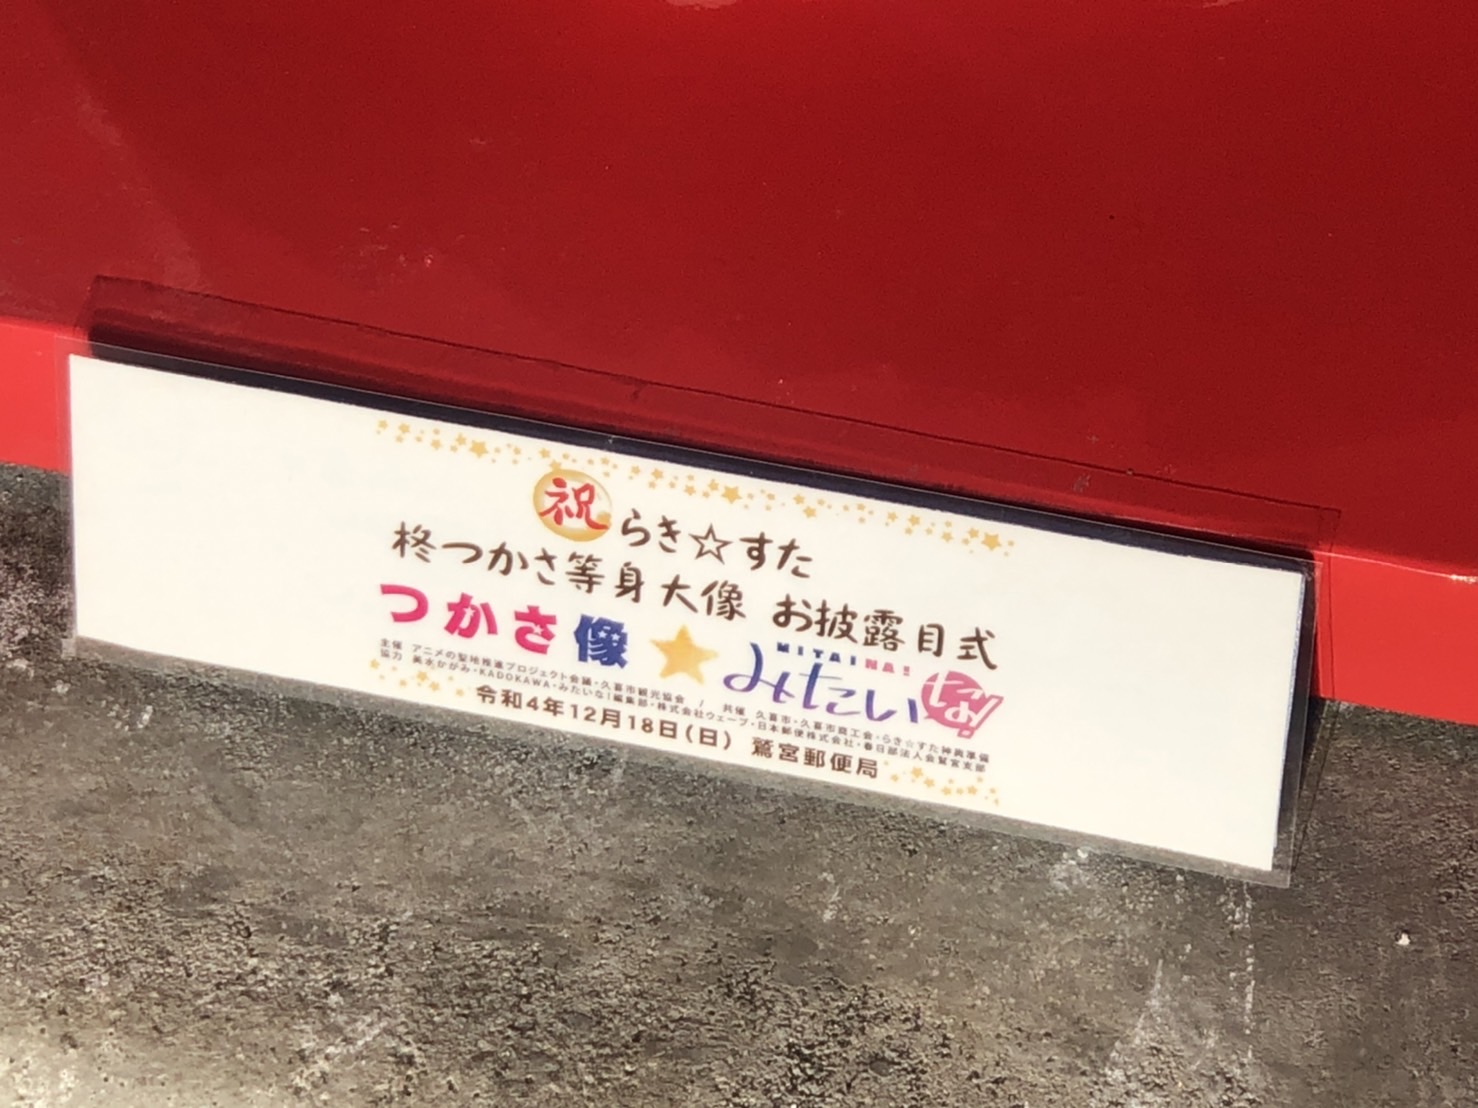 『らき☆すた』の柊つかさ像が埼玉の郵便局に設置の画像